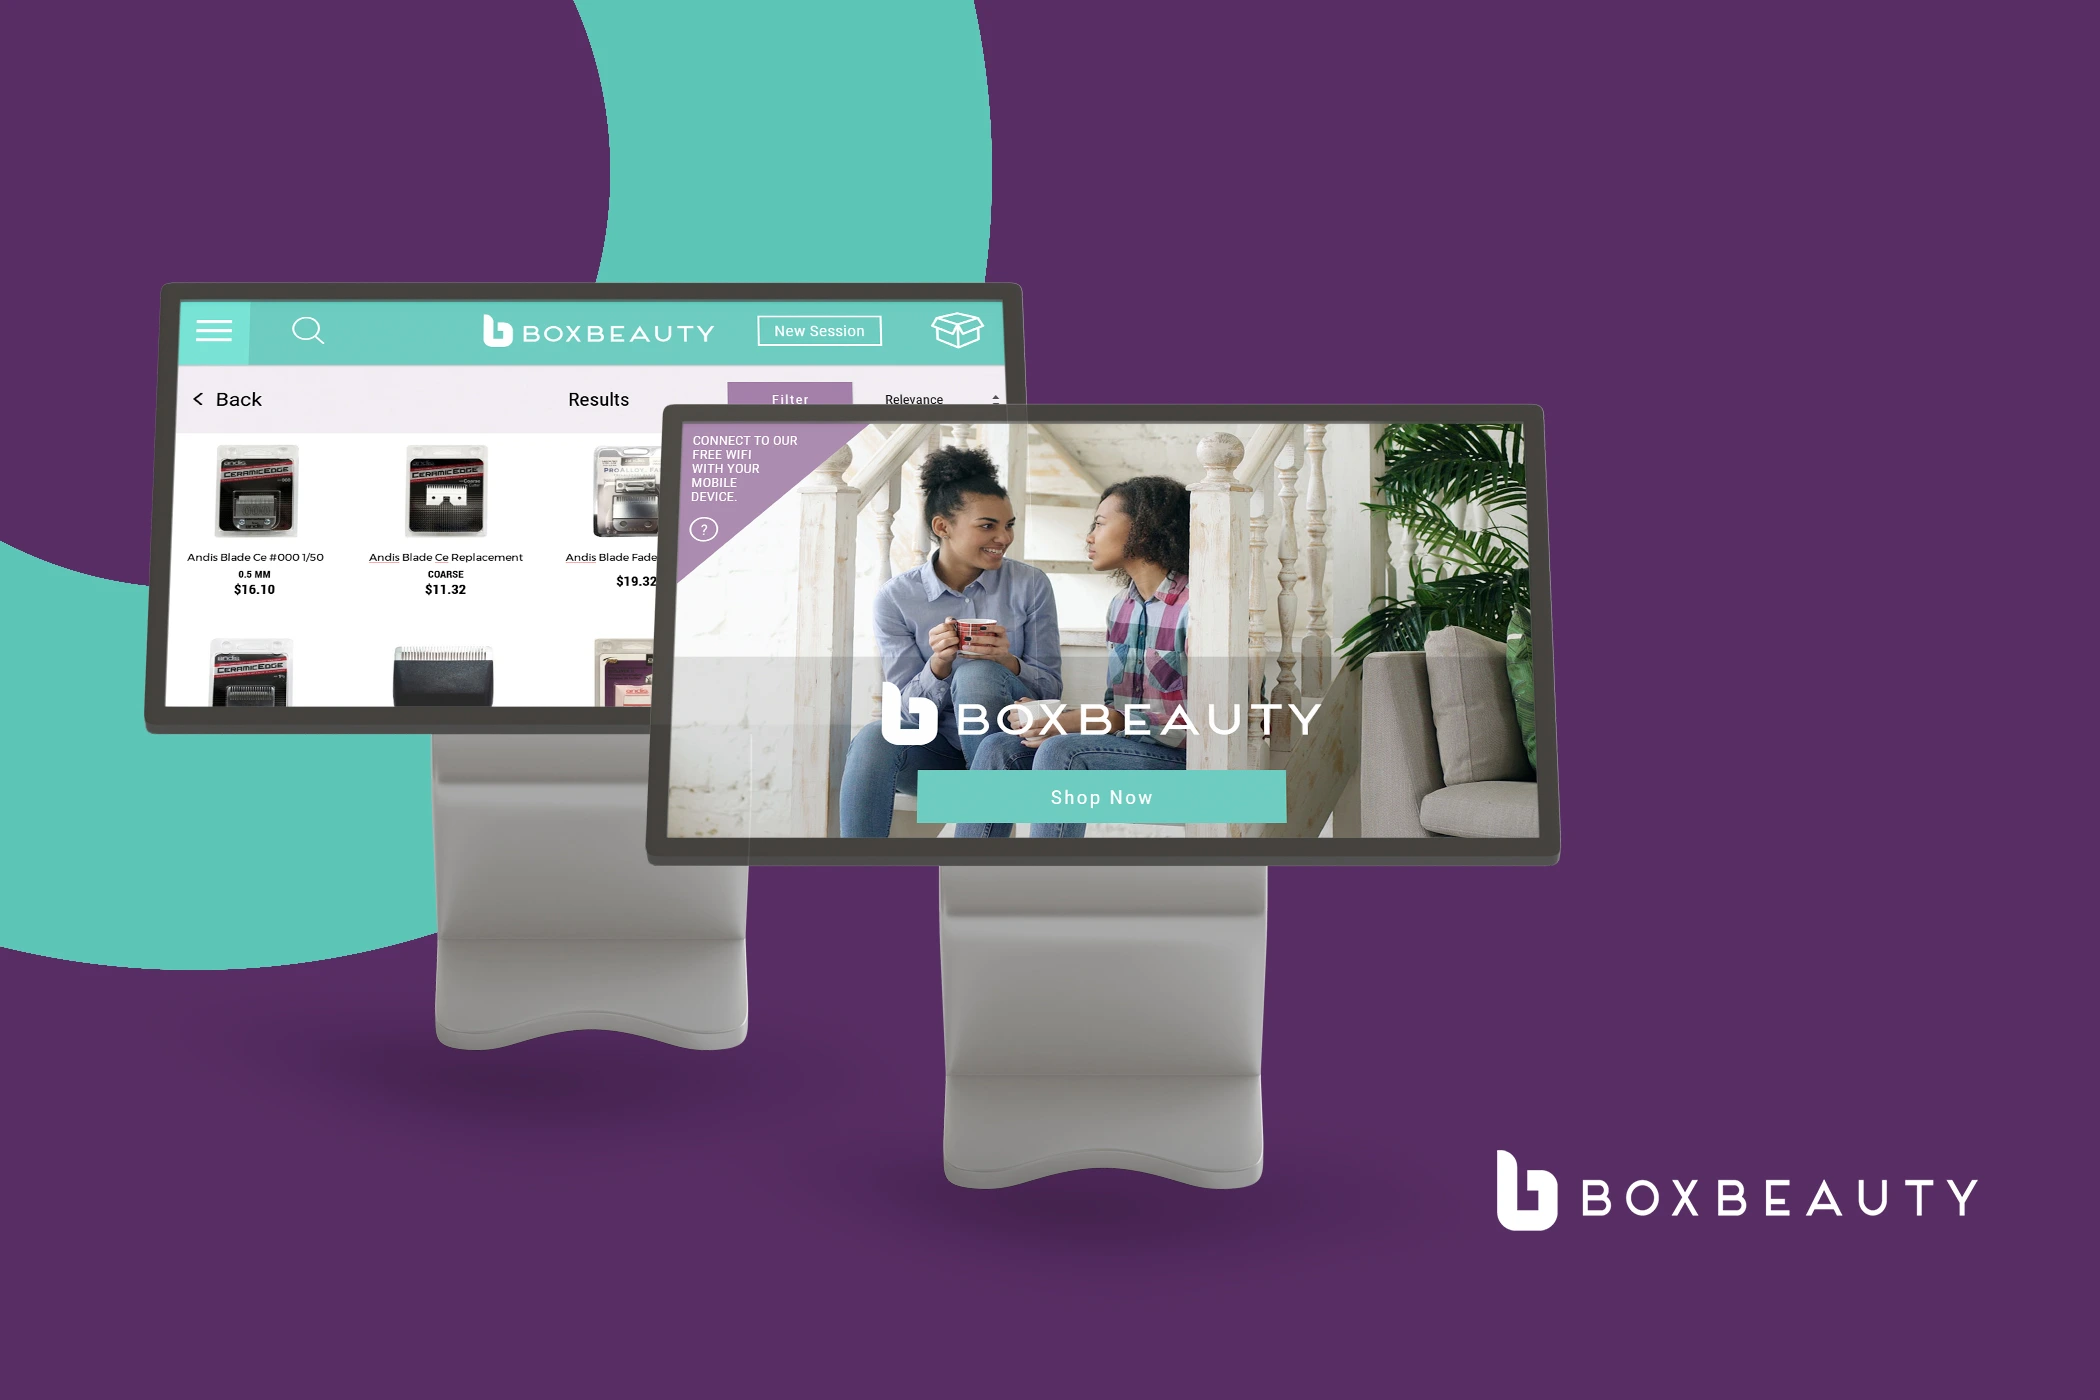 Box Beauty (Kiosk-Based App)